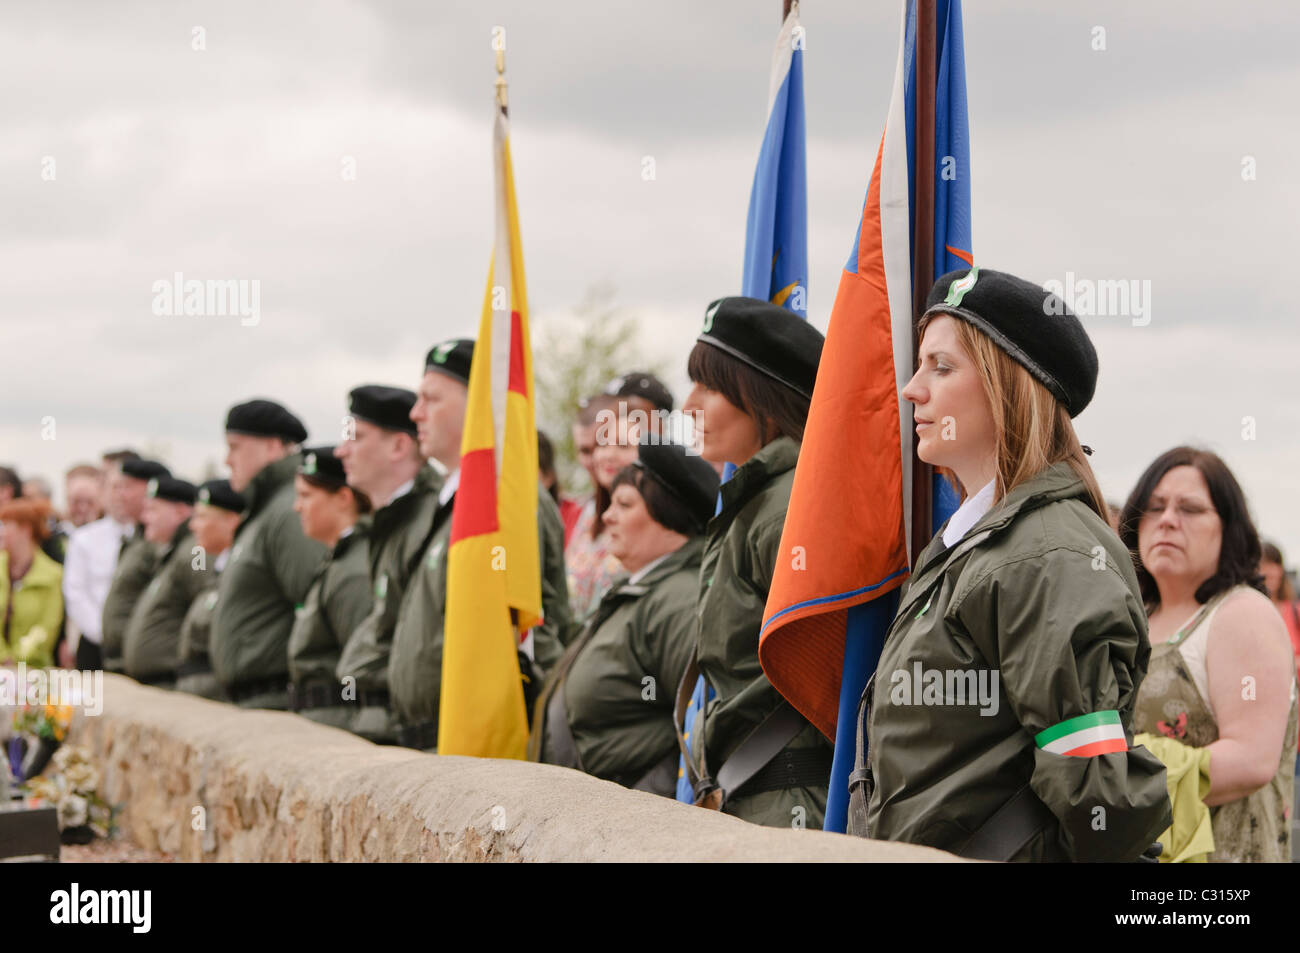 Belfast, Irlande du Nord. 24 avr 2011 - gens habillés en vêtements de style paramilitaire maintenez options que le Sinn Fein commémorer l'Insurrection de Pâques 1916 à la parcelle en républicaine d'Antrim Millfield cimetière. Banque D'Images